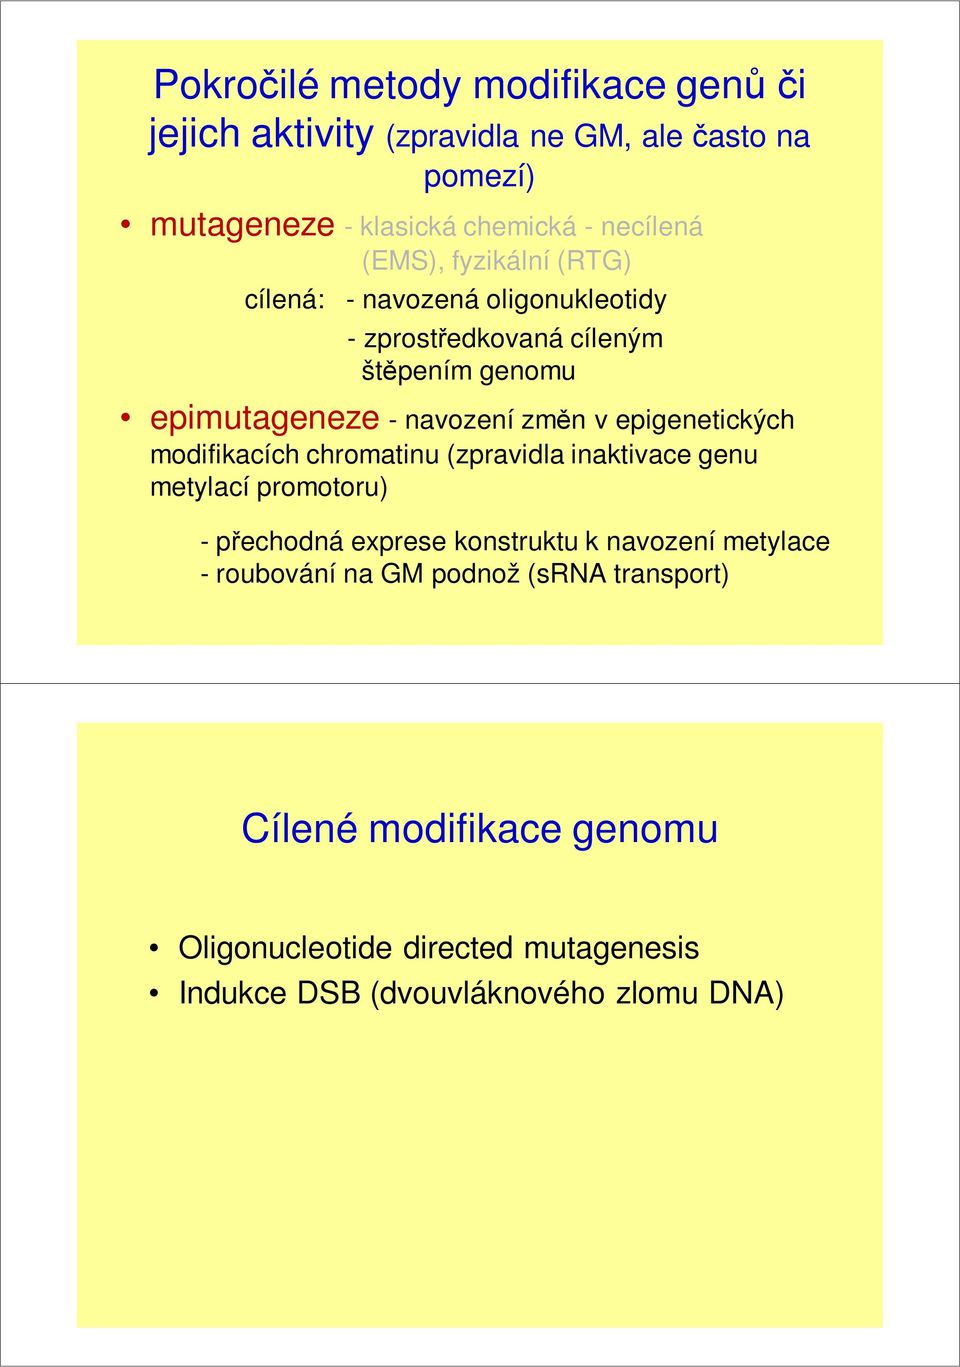 epigenetických modifikacích chromatinu (zpravidla inaktivace genu metylací promotoru) - přechodná exprese konstruktu k navození